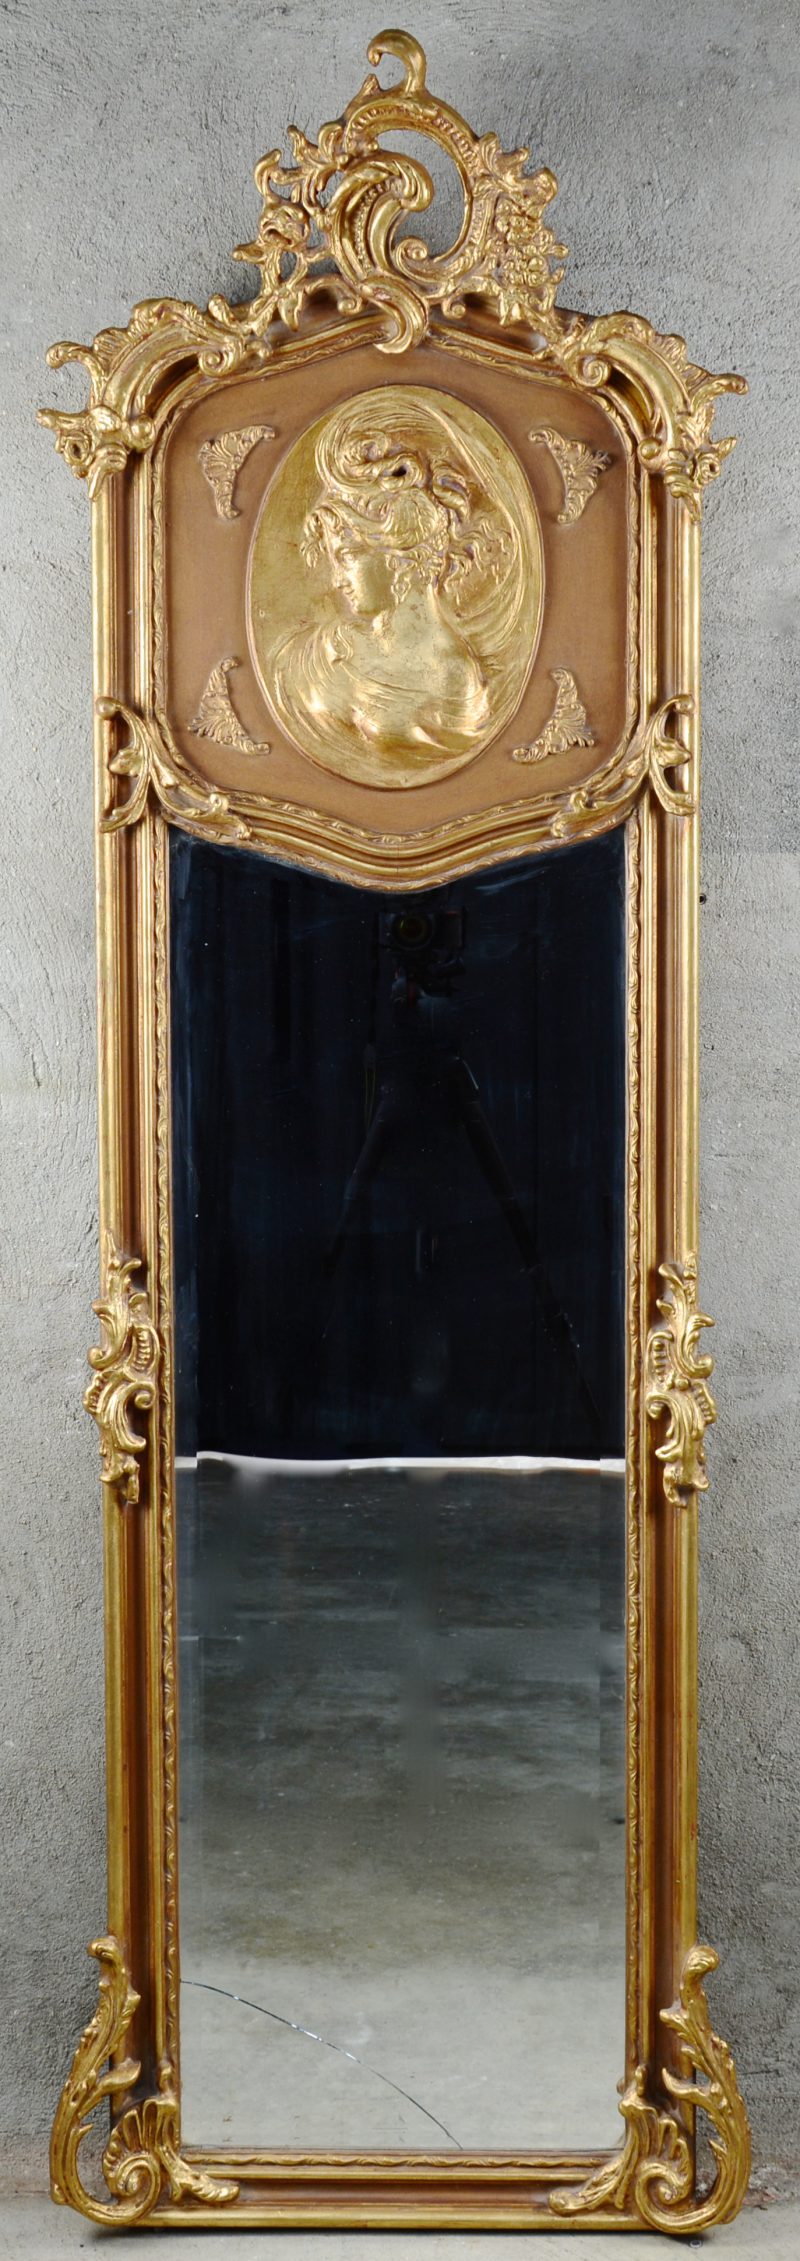 Een verguld houten spiegel in Lodewijk XV-stijl, versierd met een bas-reliëf met een jonge vrouw in profiel. Glas gebarsten.